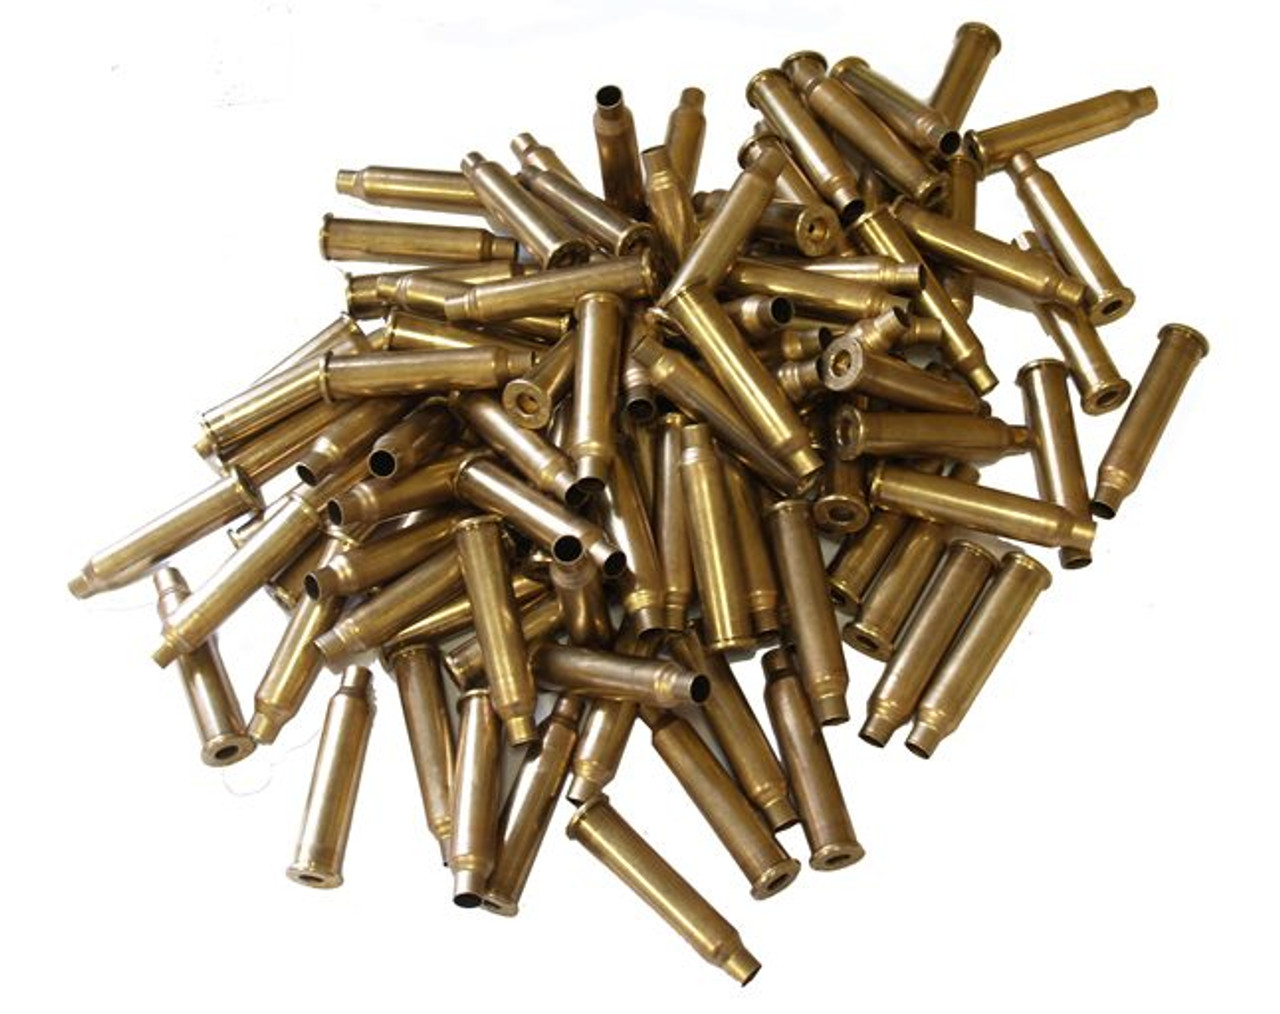 300 BRM Brass (100) - Brass for 300 Bench Rest Magnum